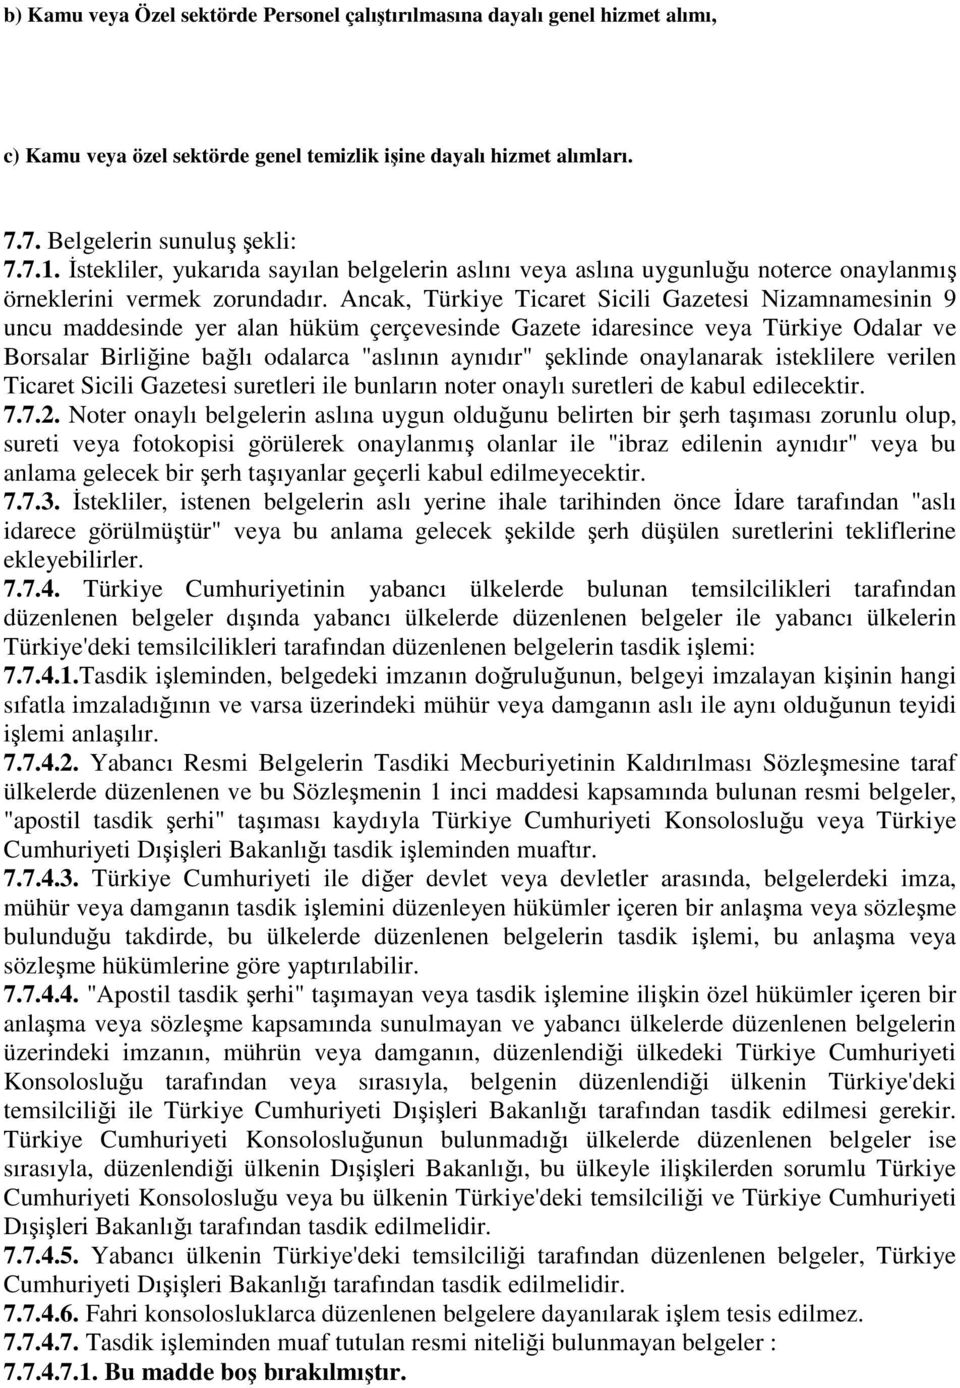 Ancak, Türkiye Ticaret Sicili Gazetesi Nizamnamesinin 9 uncu maddesinde yer alan hüküm çerçevesinde Gazete idaresince veya Türkiye Odalar ve Borsalar Birliğine bağlı odalarca "aslının aynıdır"